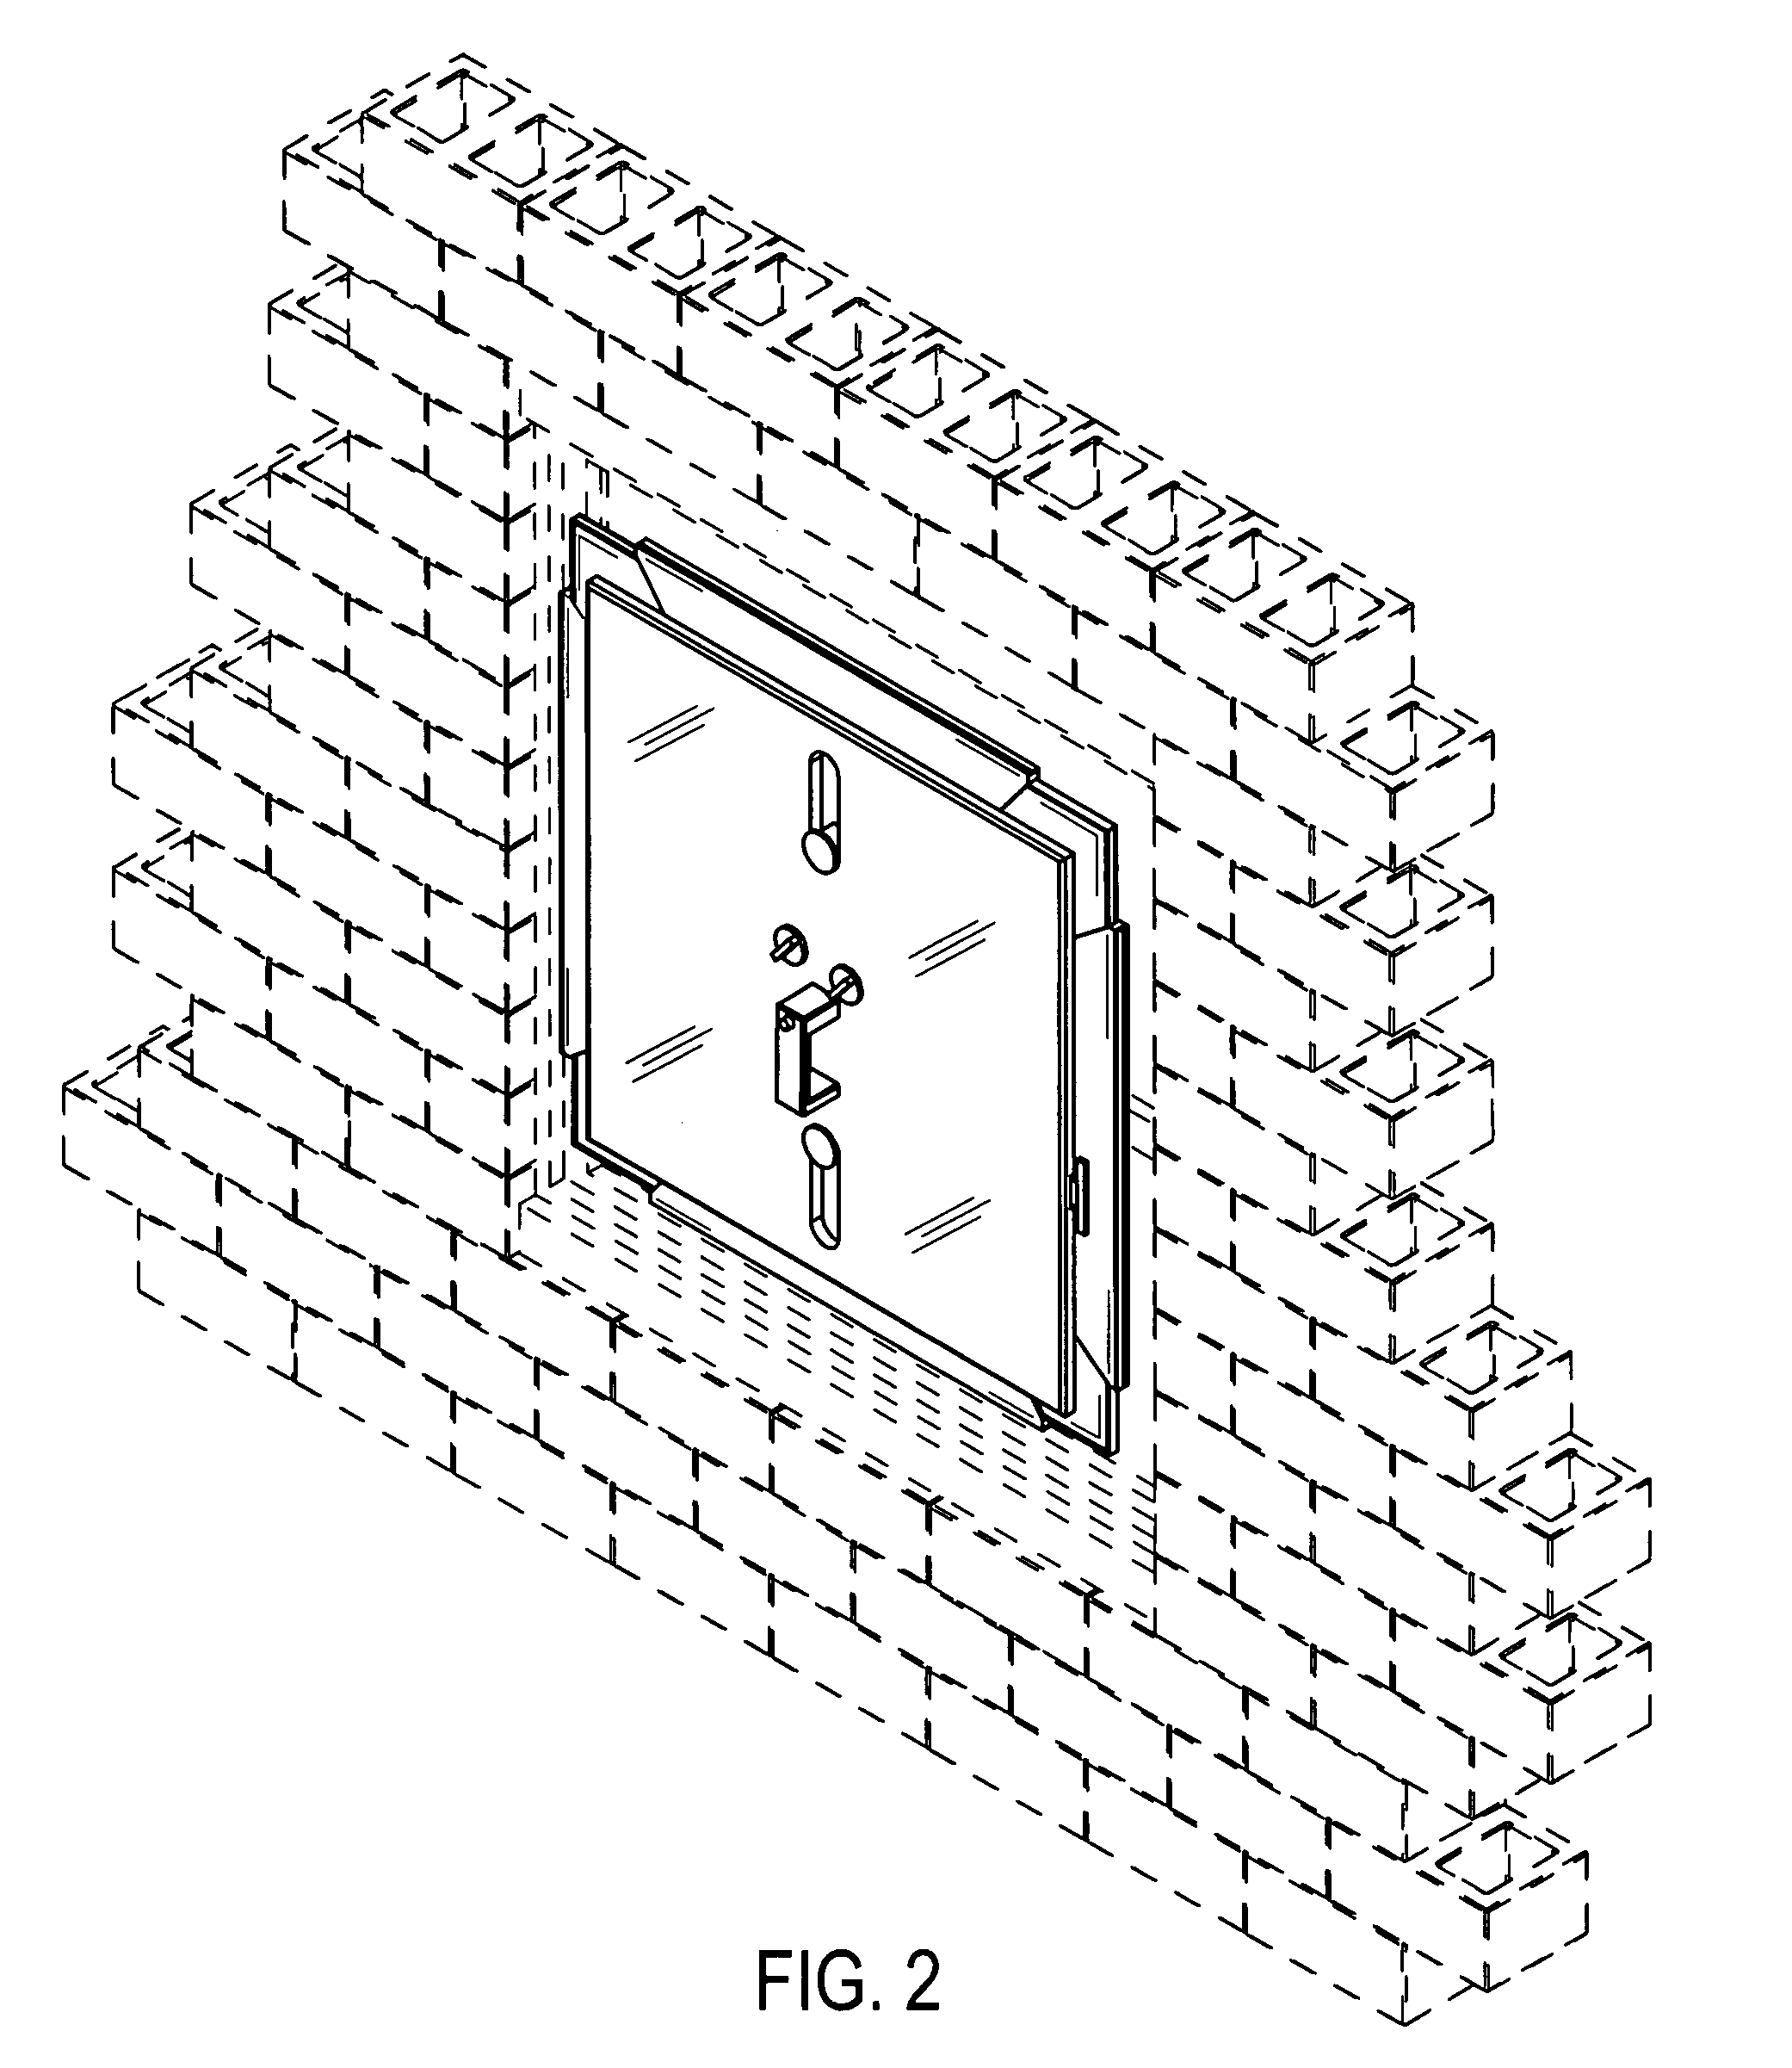 Window shutter system